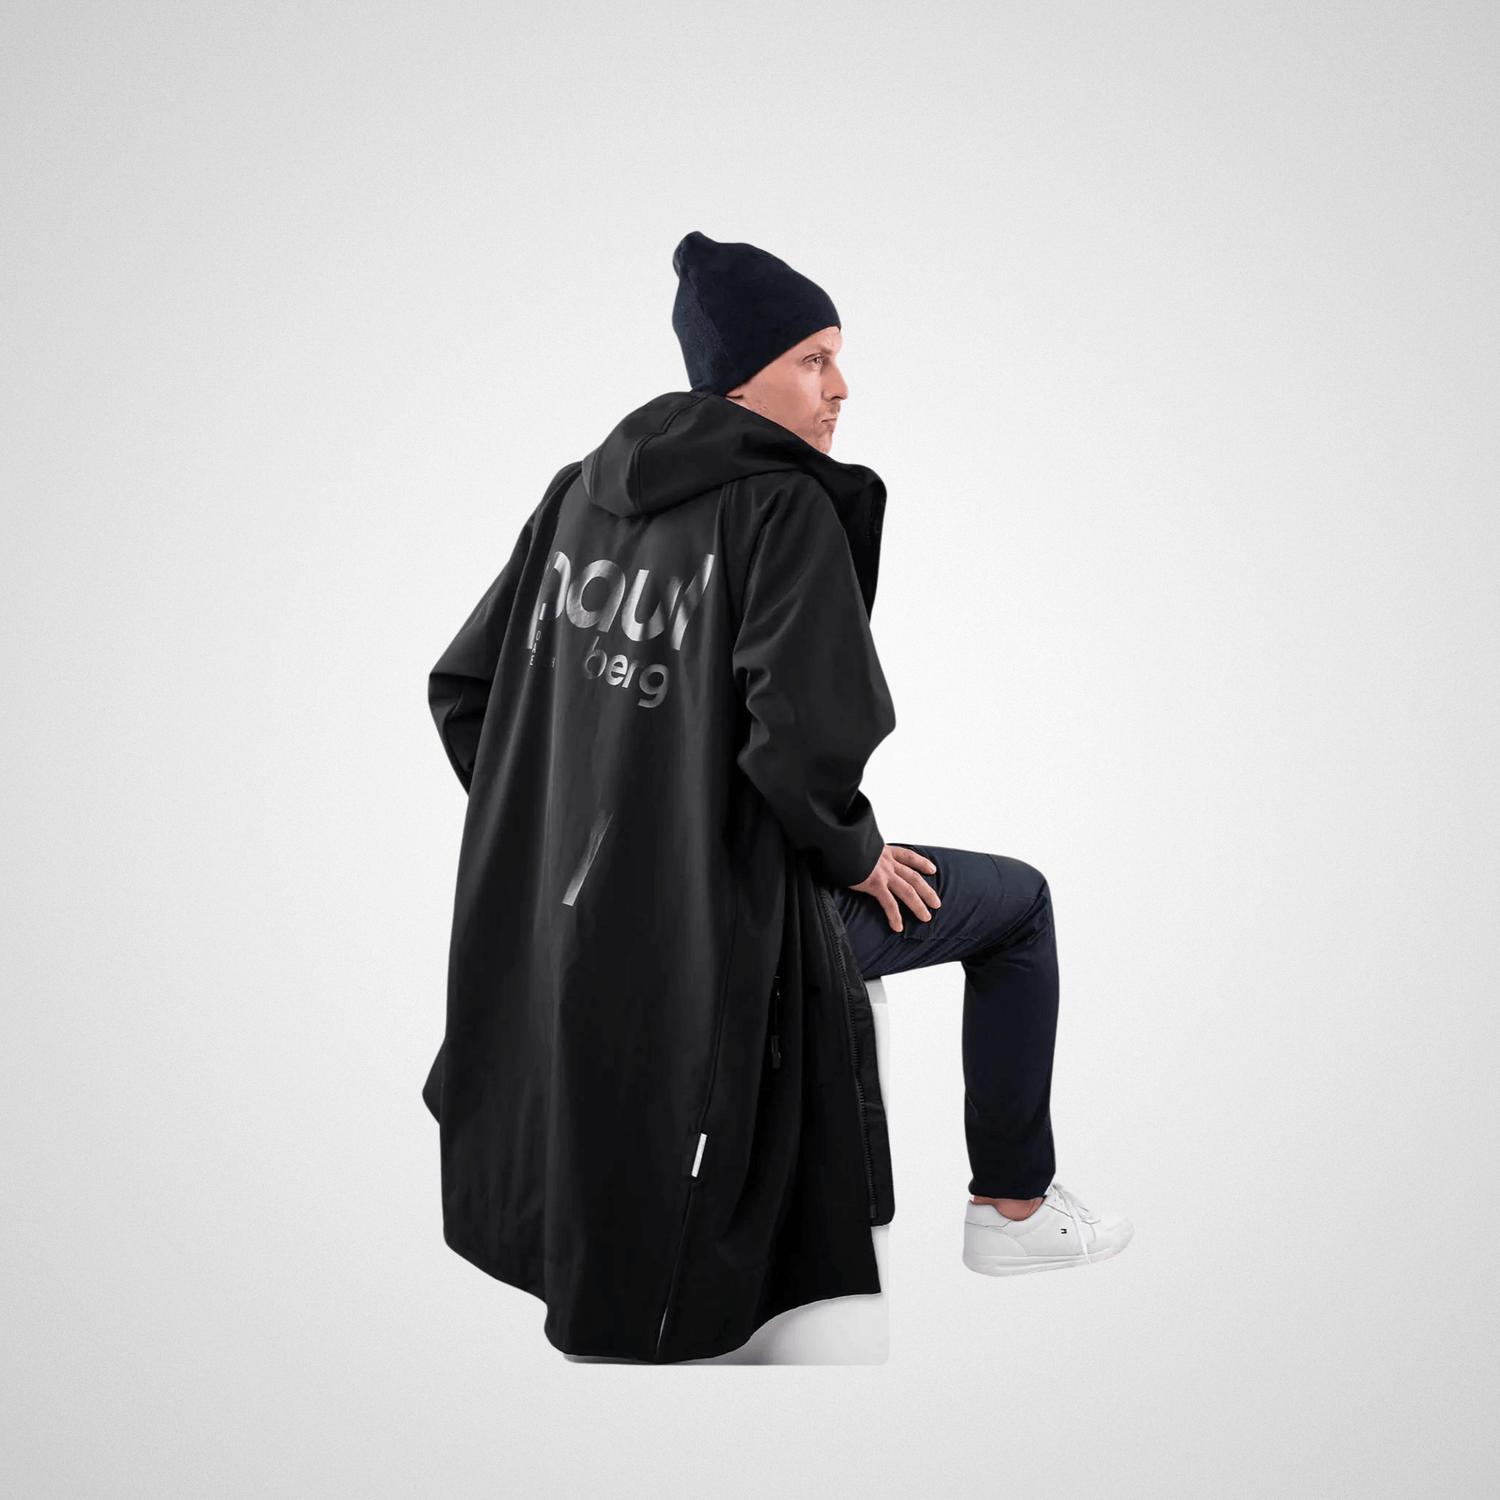 Paul Berg - Light Outdoor vaatteidenvaihto takki - välikausi - musta